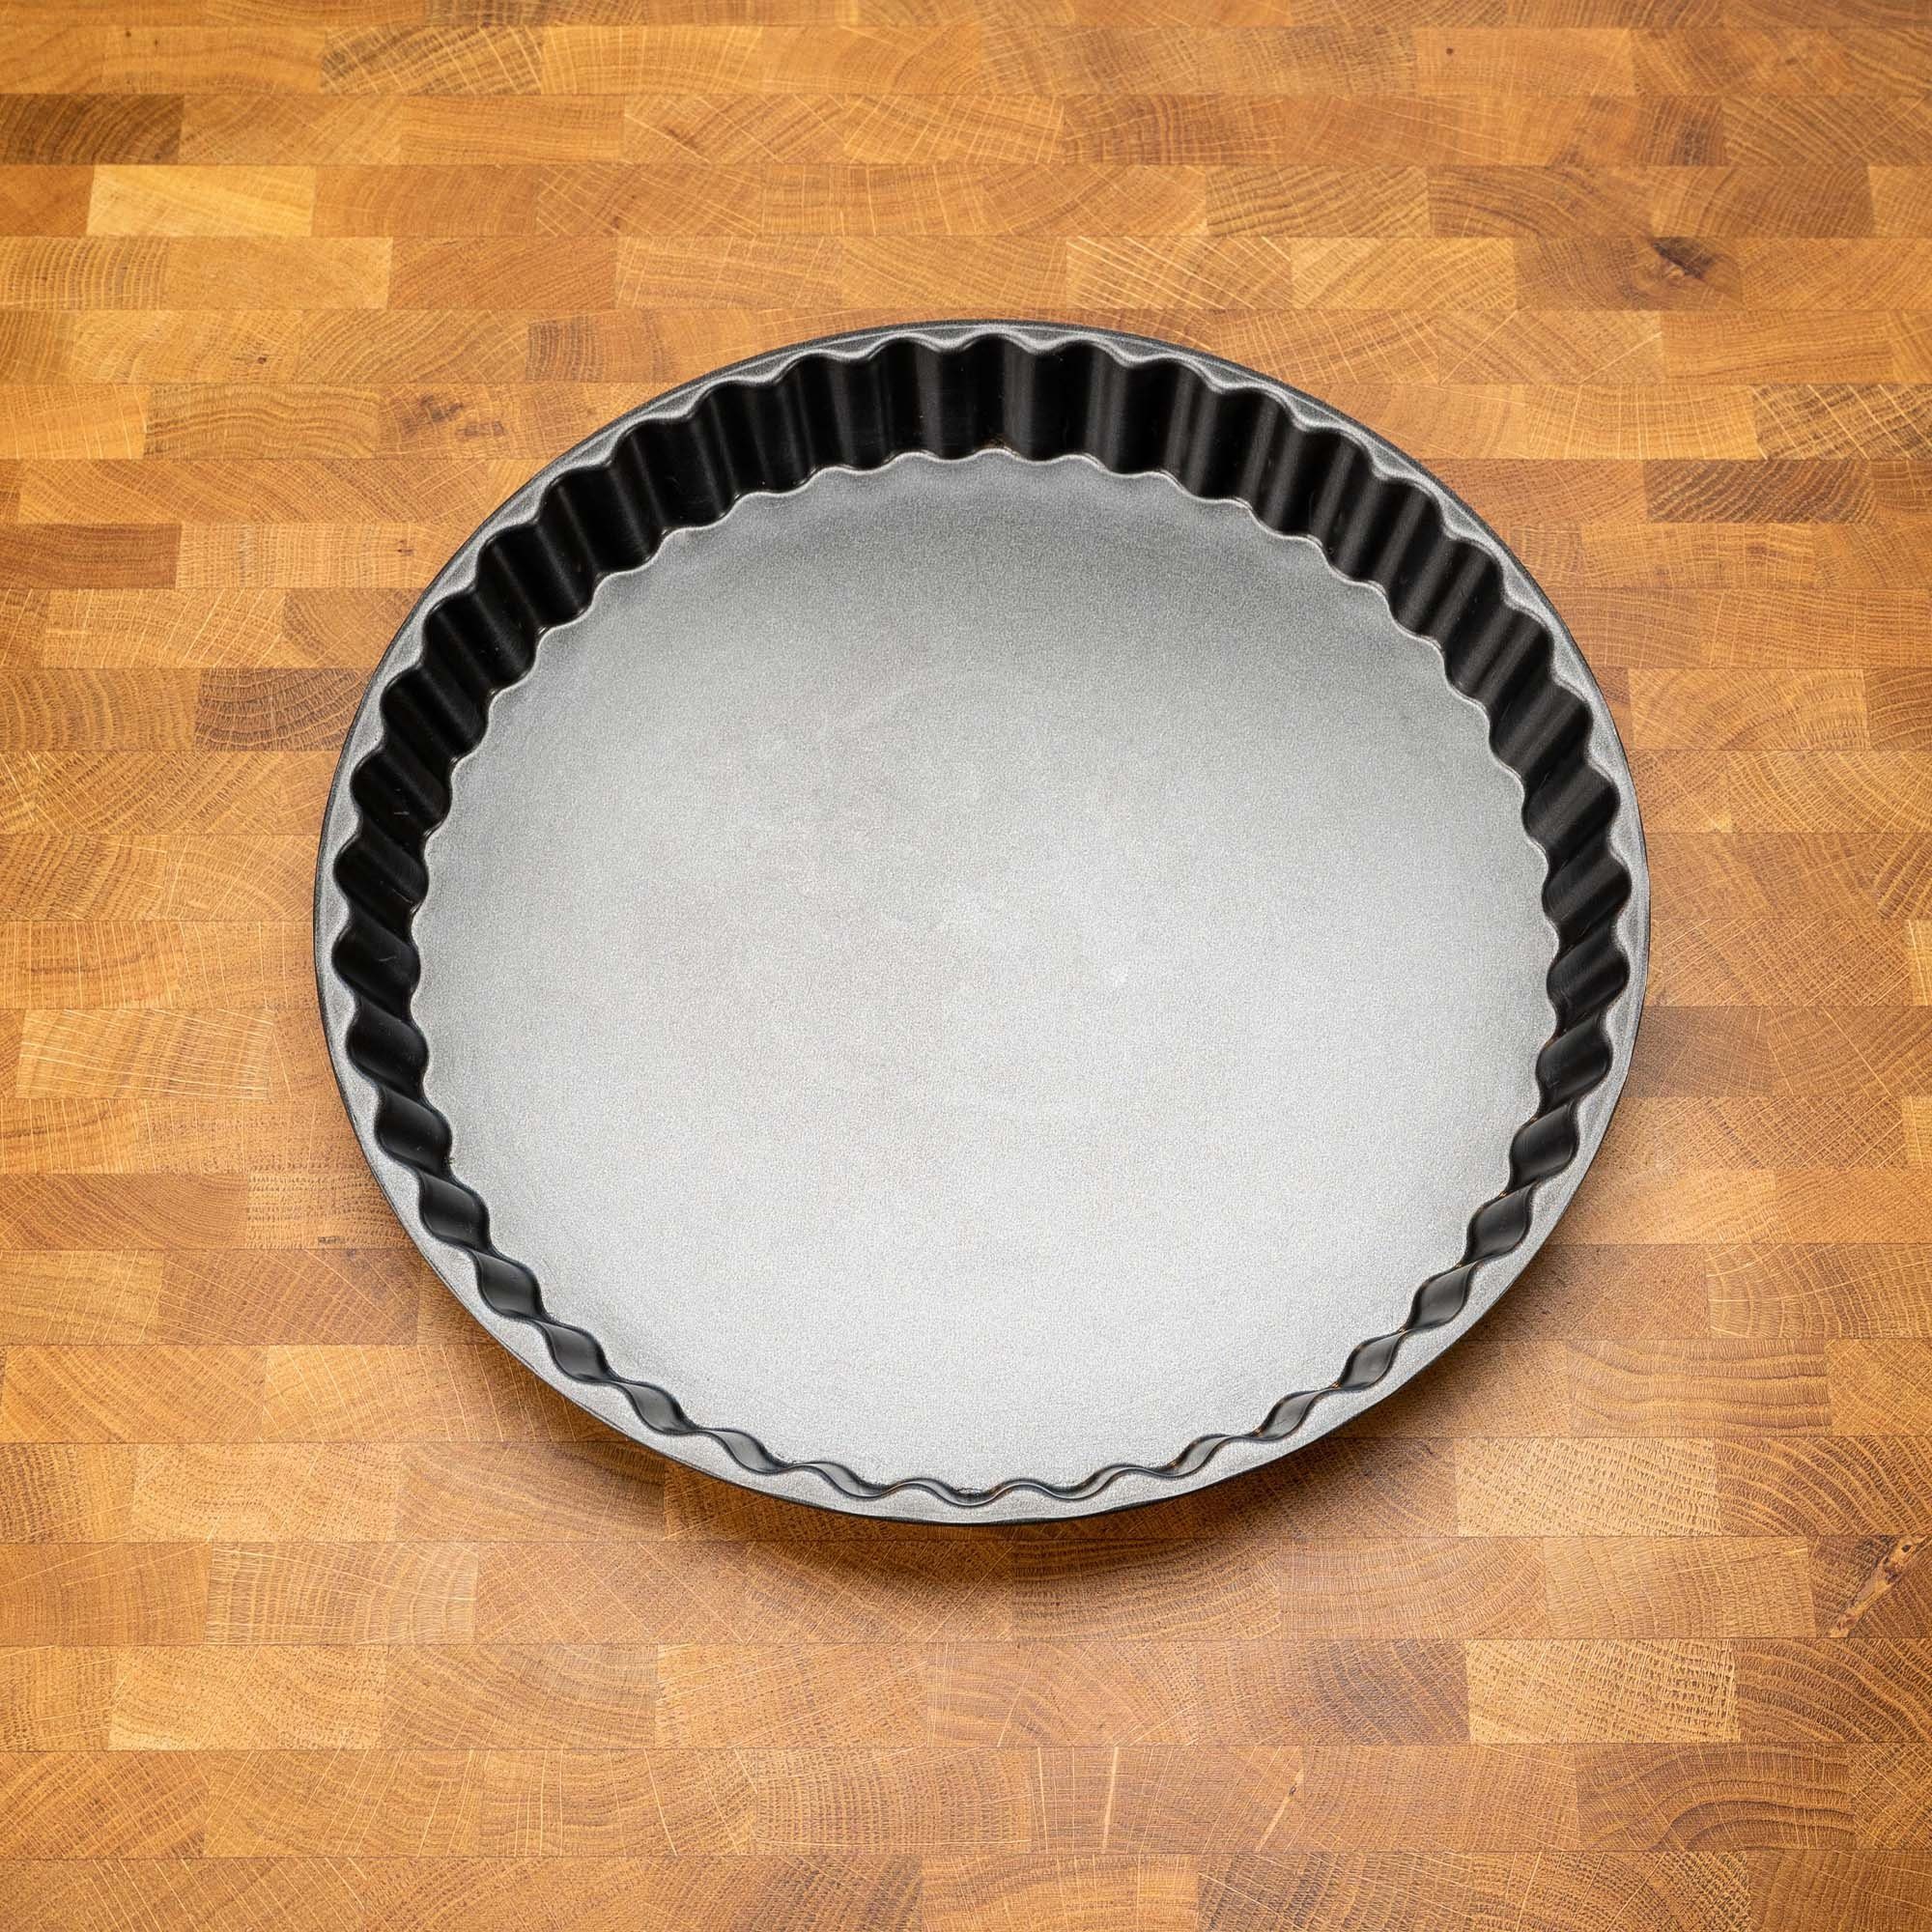 Mixcover Küchenmaschinen-Adapter Quiche- und Kuchenform mit Antihaftbeschichtung ca. 28 x 3 cm